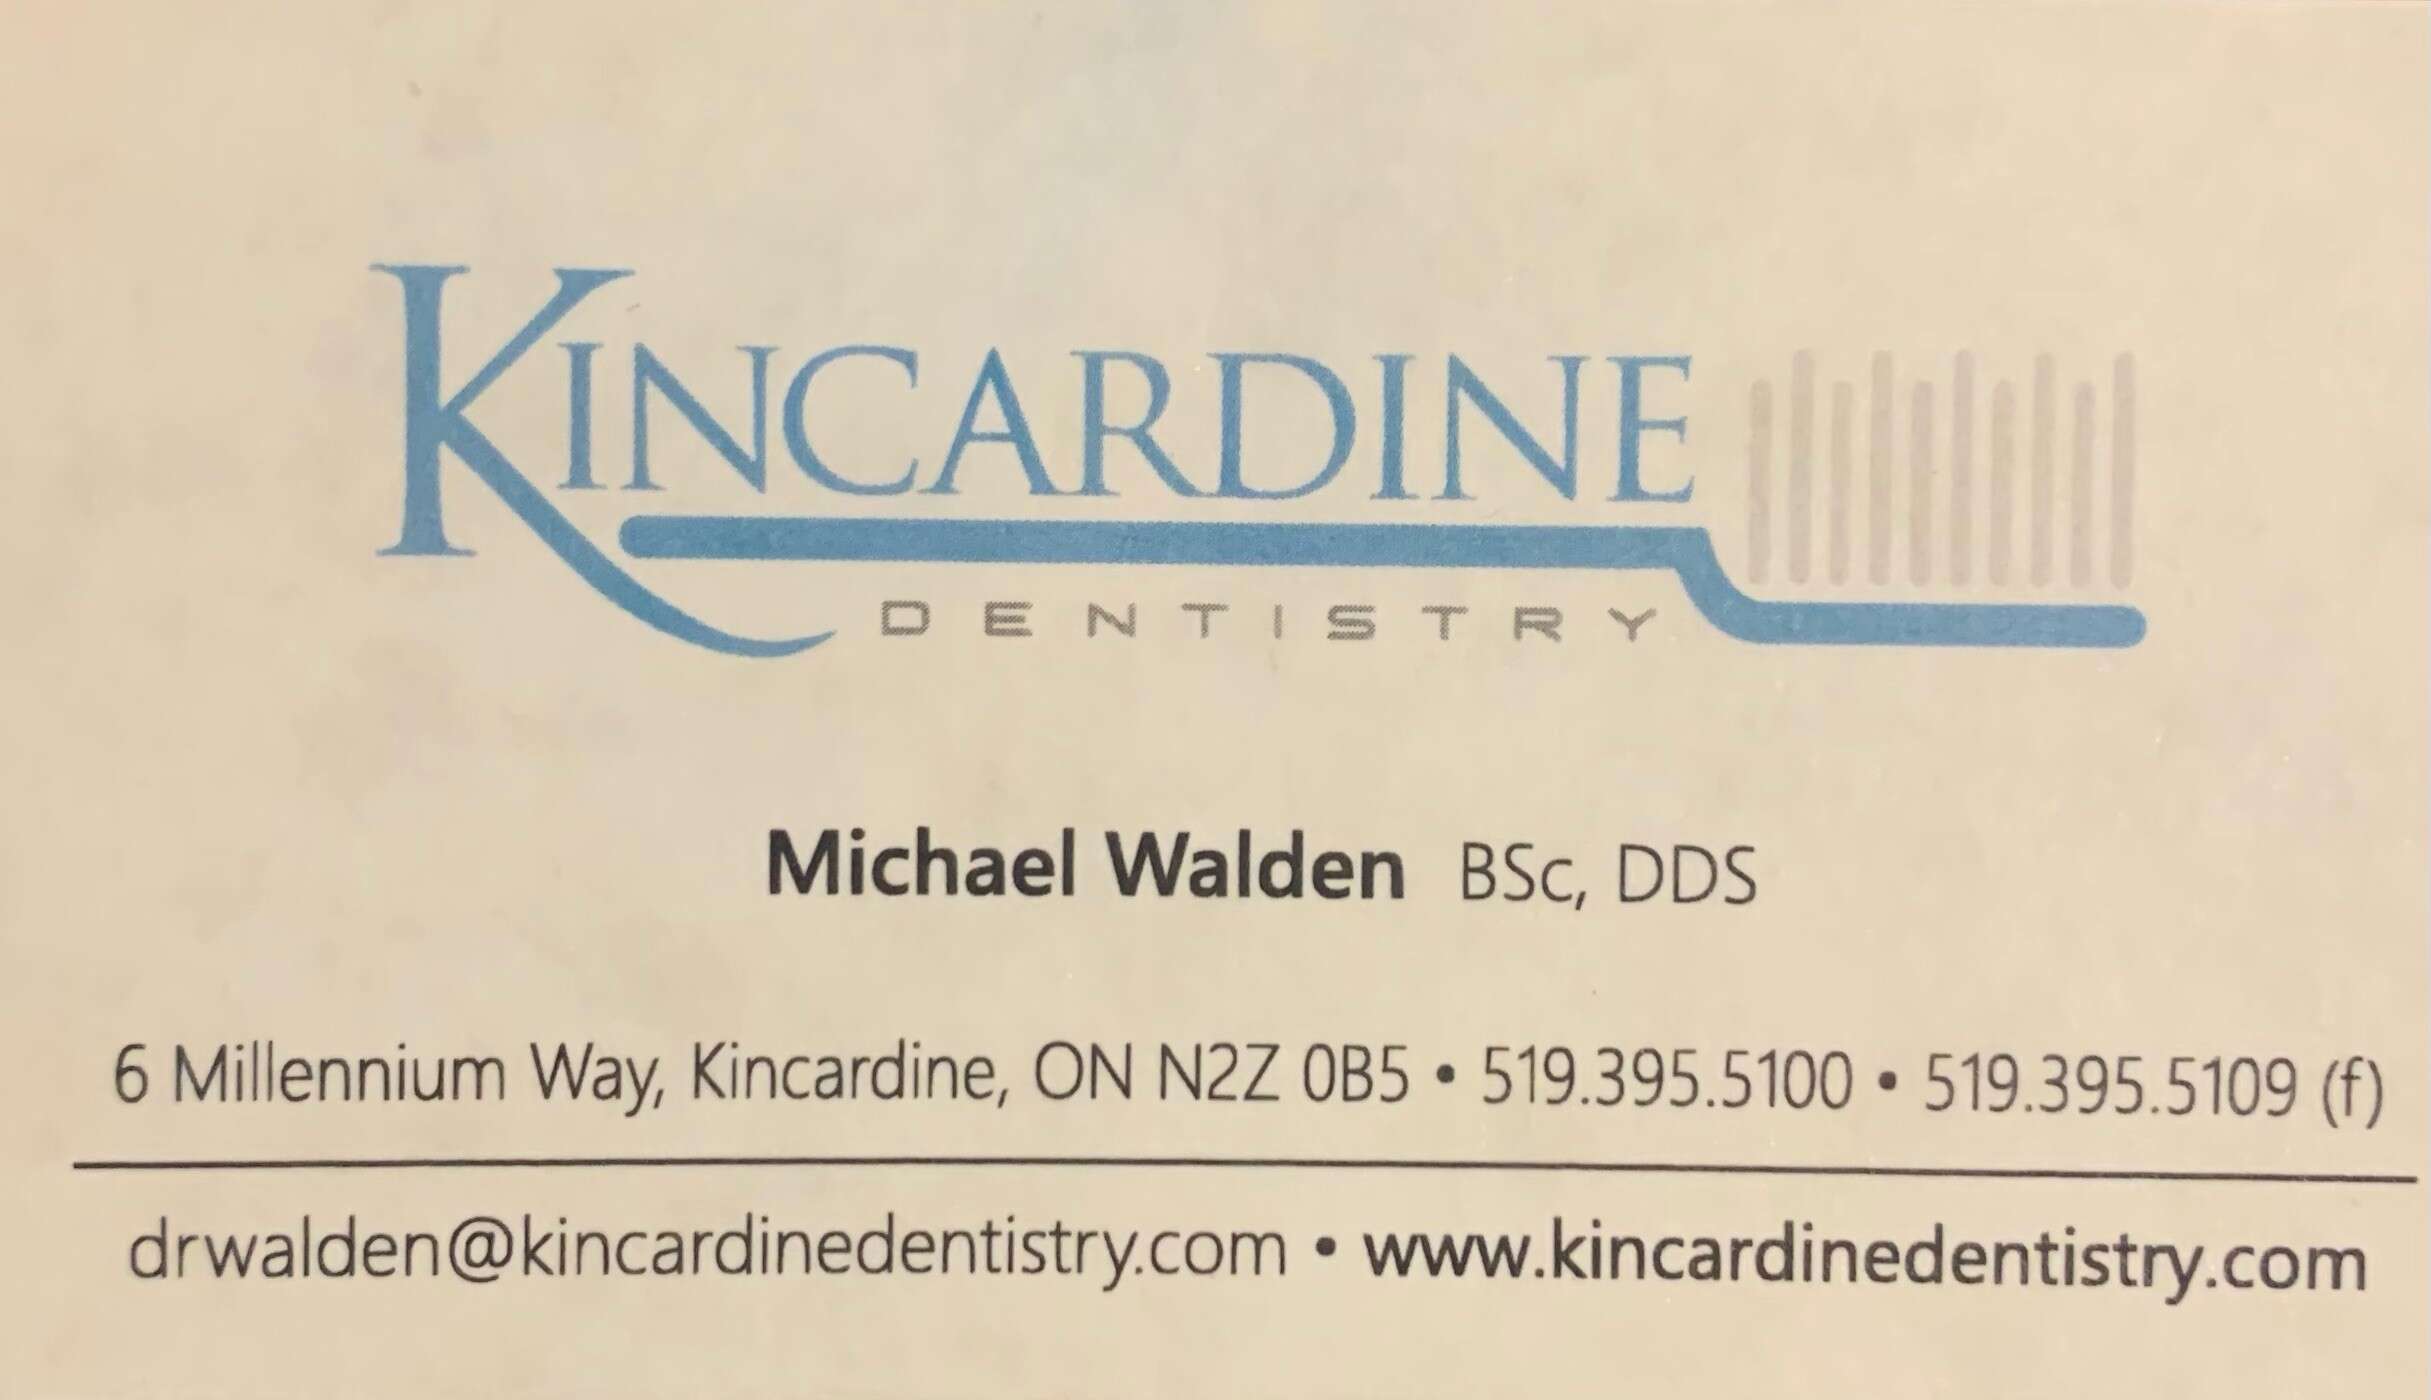 Kincardine Dentistry